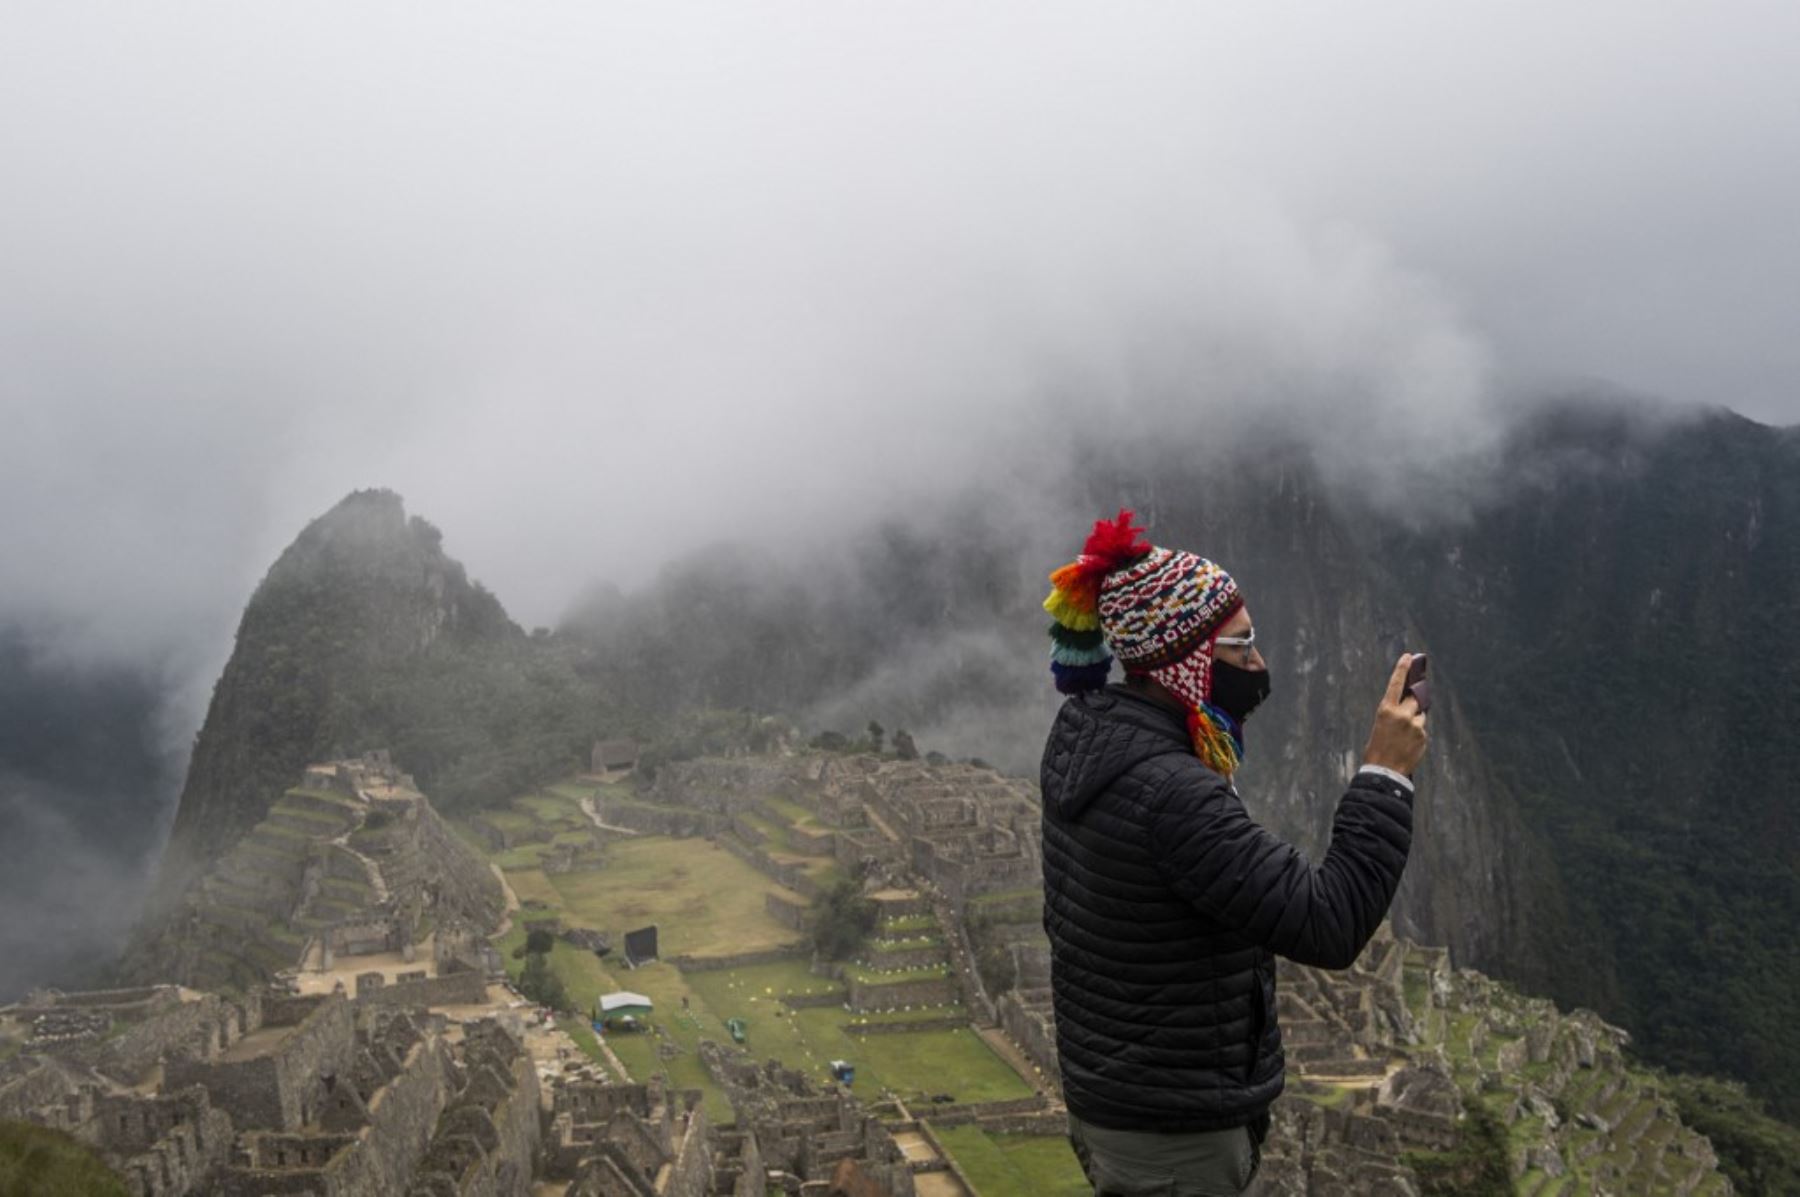 Desde hoy, la ciudadela inca de Machu Picchu volverá a recibir 897 visitantes al día, equivalente al 40 % de su aforo máximo, de lunes a domingo, según establecen las nuevas disposiciones del Ejecutivo para el ingreso a los monumentos arqueológicos ubicados en provincias con nivel de alerta muy alto de contagio frente a la pandemia de covid-19. Foto: AFP